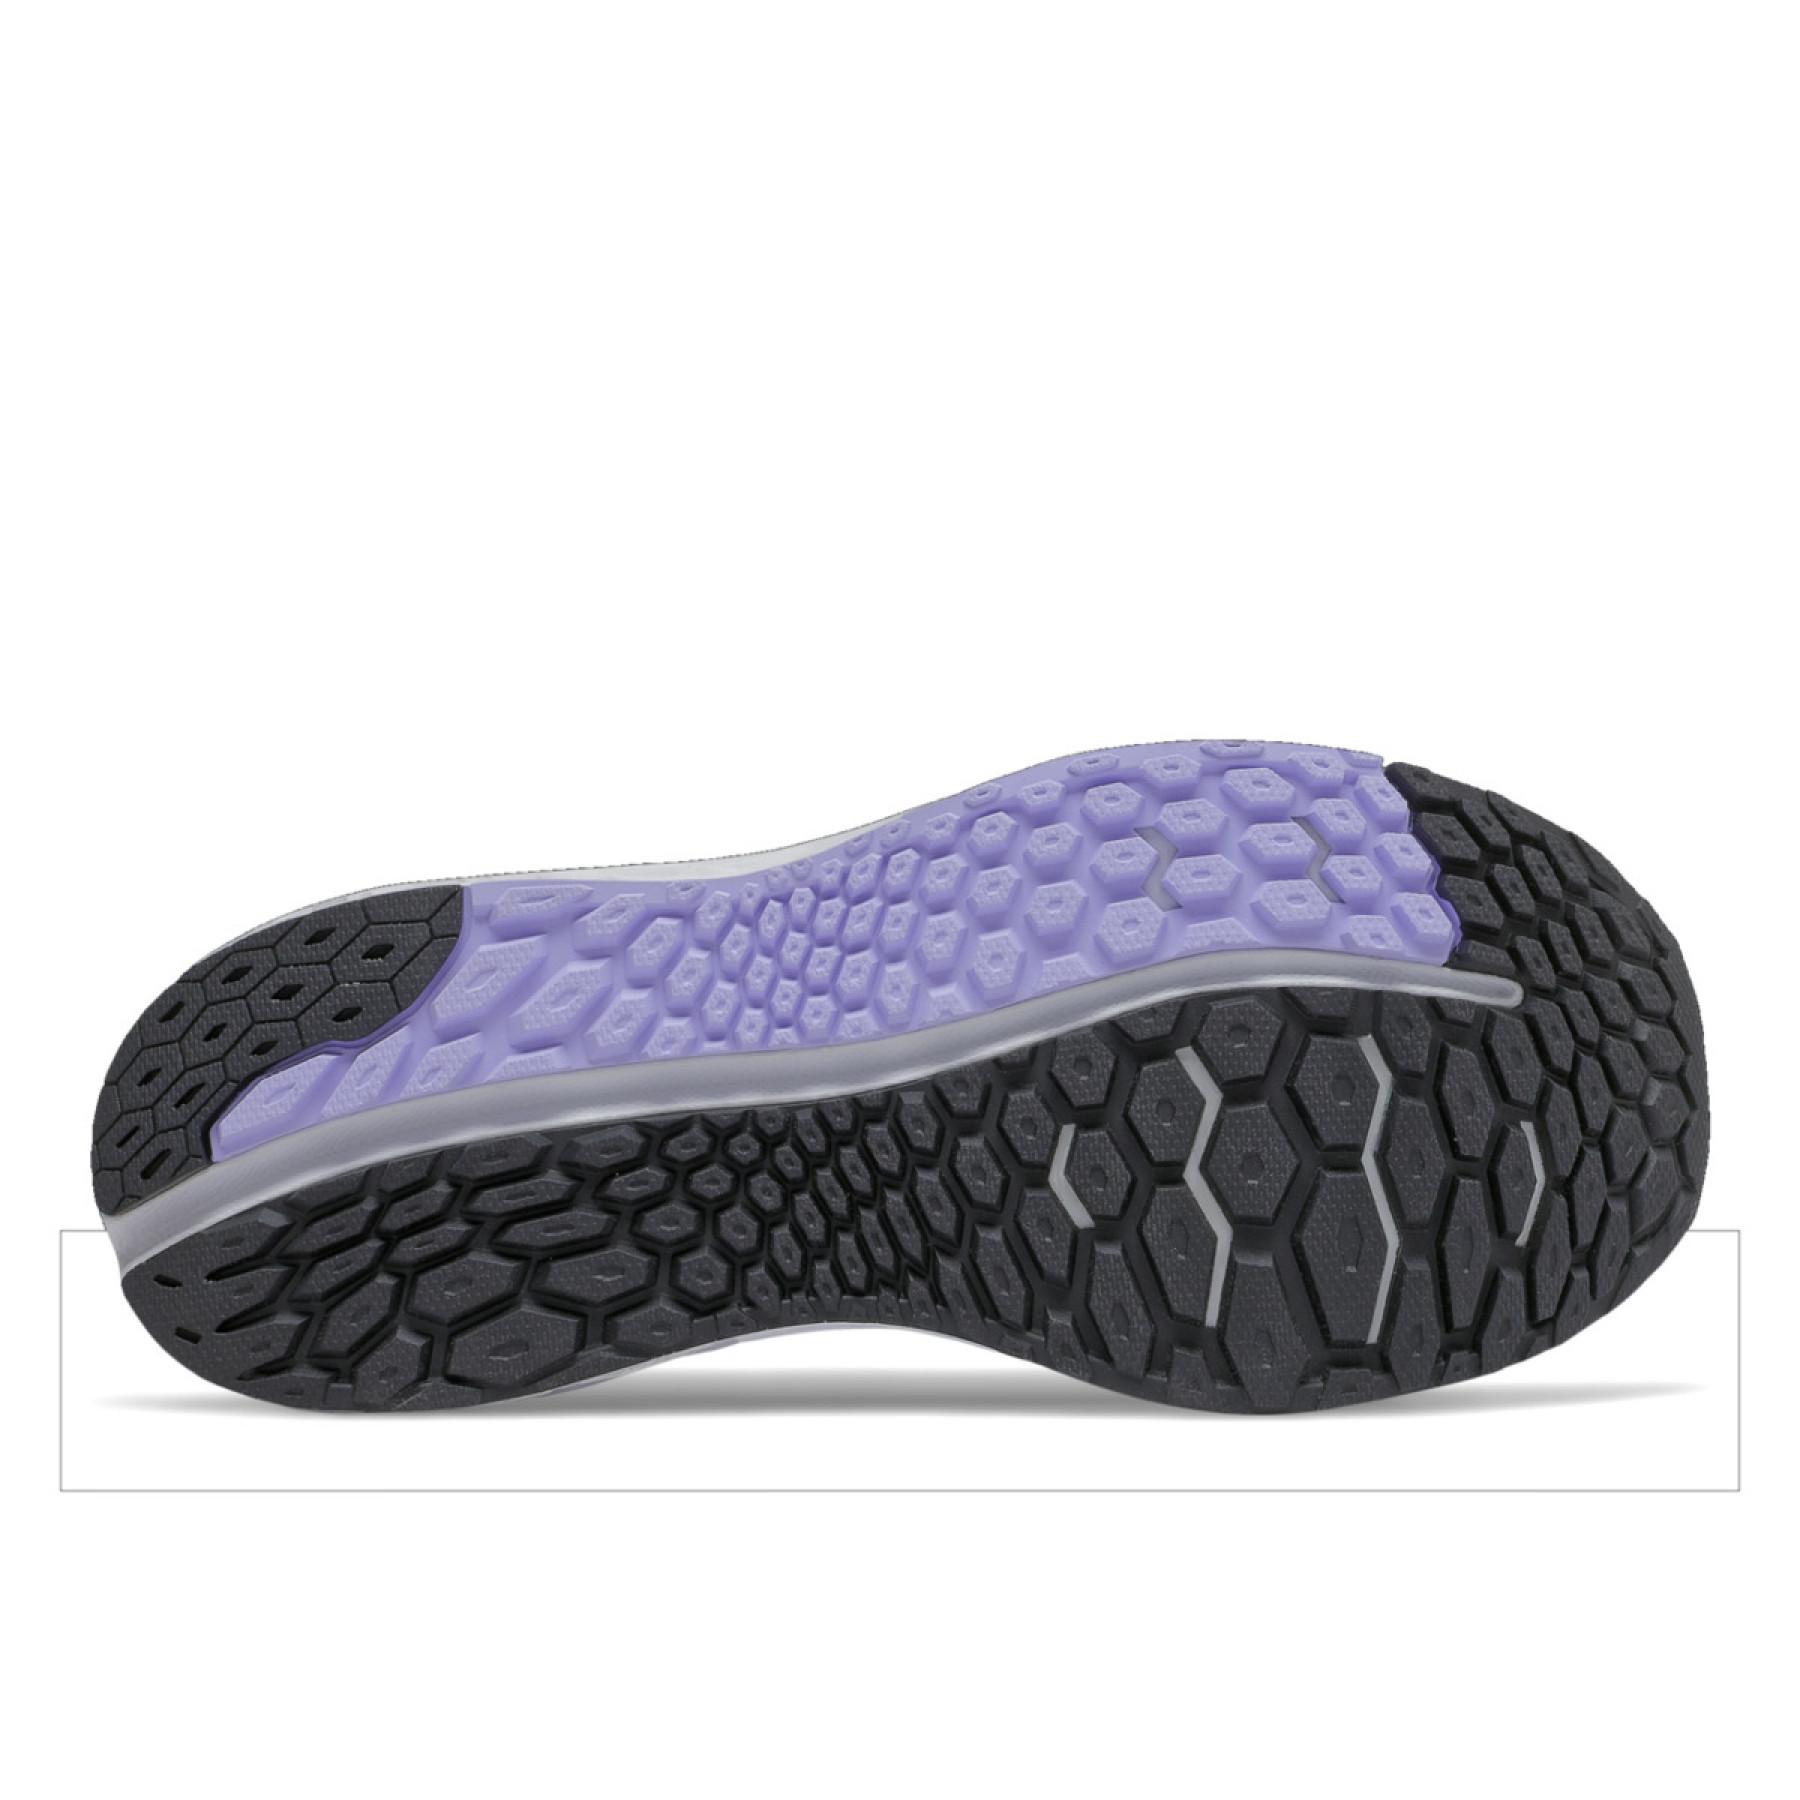 Chaussures de running femme New Balance fresh foam vongo v4